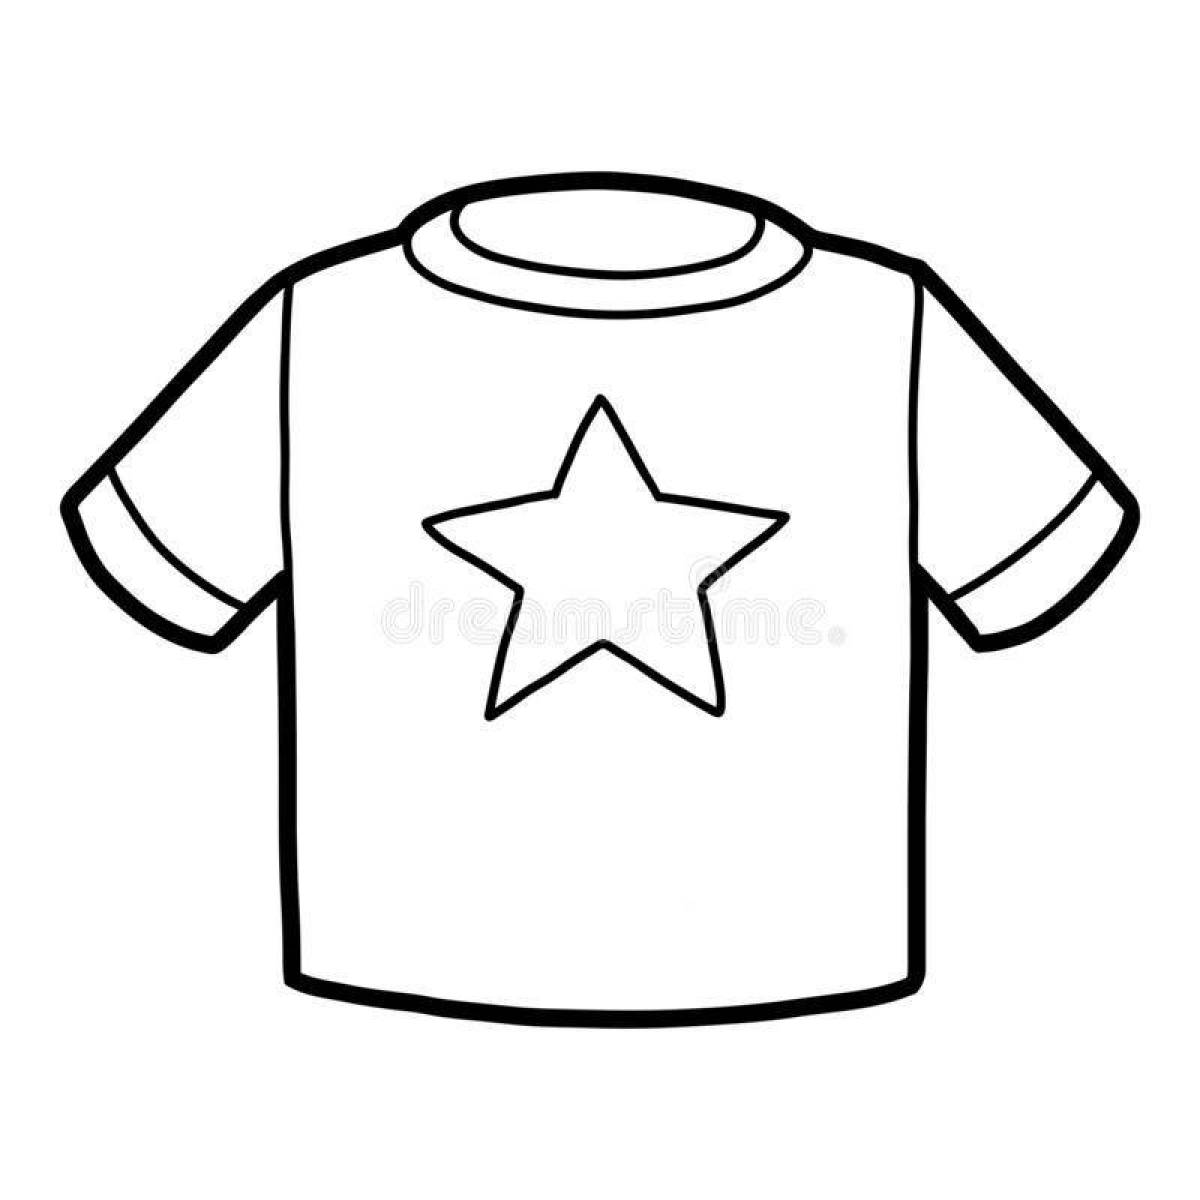 Креативная раскраска футболок для детей